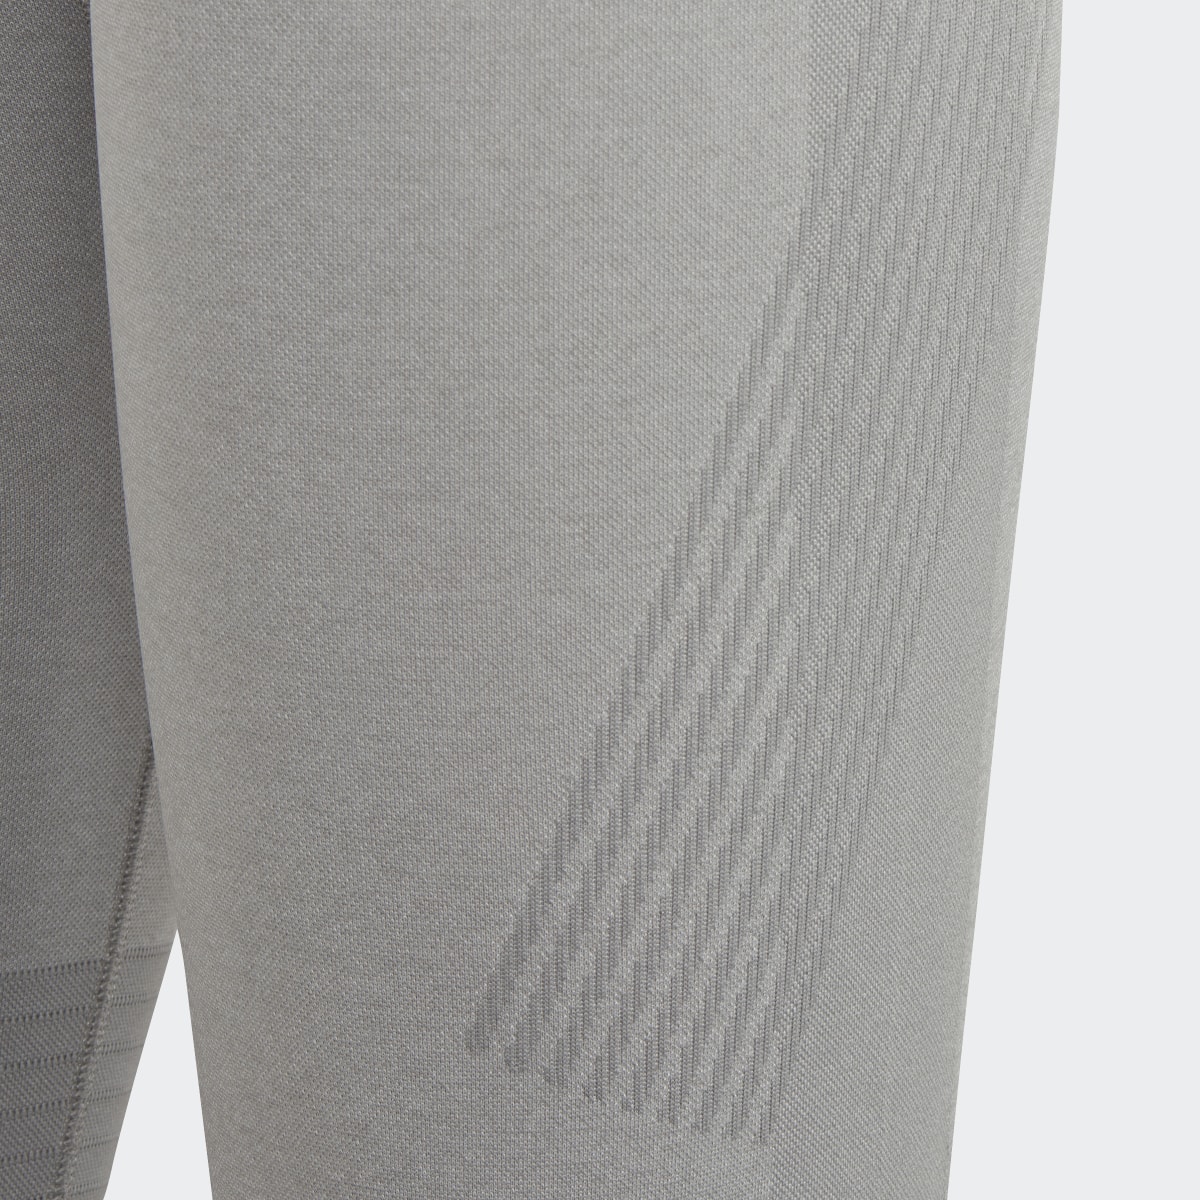 Adidas Mallas TrueStrength para Yoga adidas by Stella McCartney 7/8 Corte Alto. 9